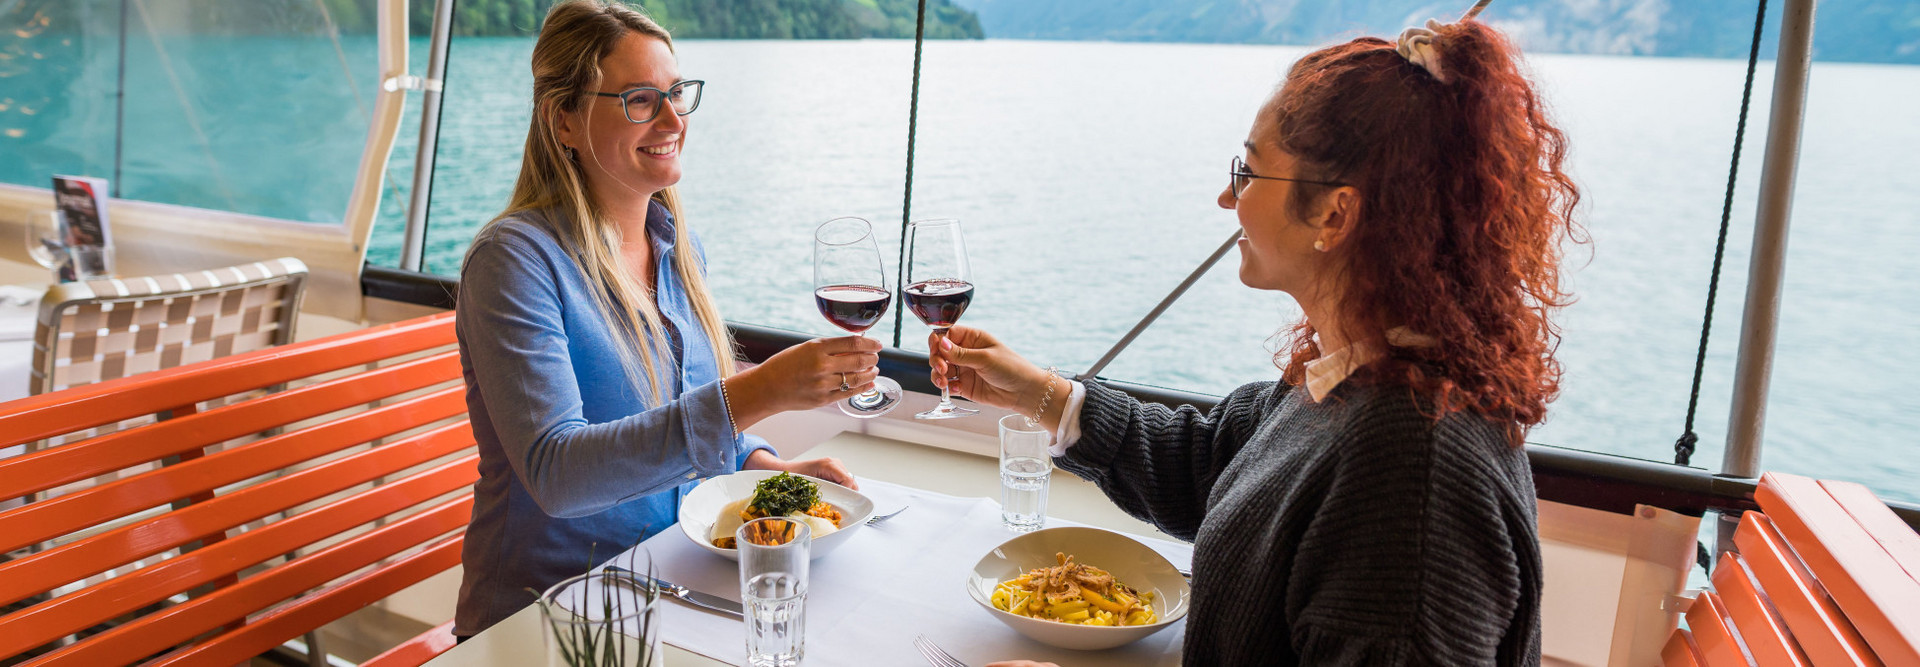 Deux jeunes femmes profitent de l'offre gastronomique sur le bateau et portent un toast avec un verre de vin rouge.